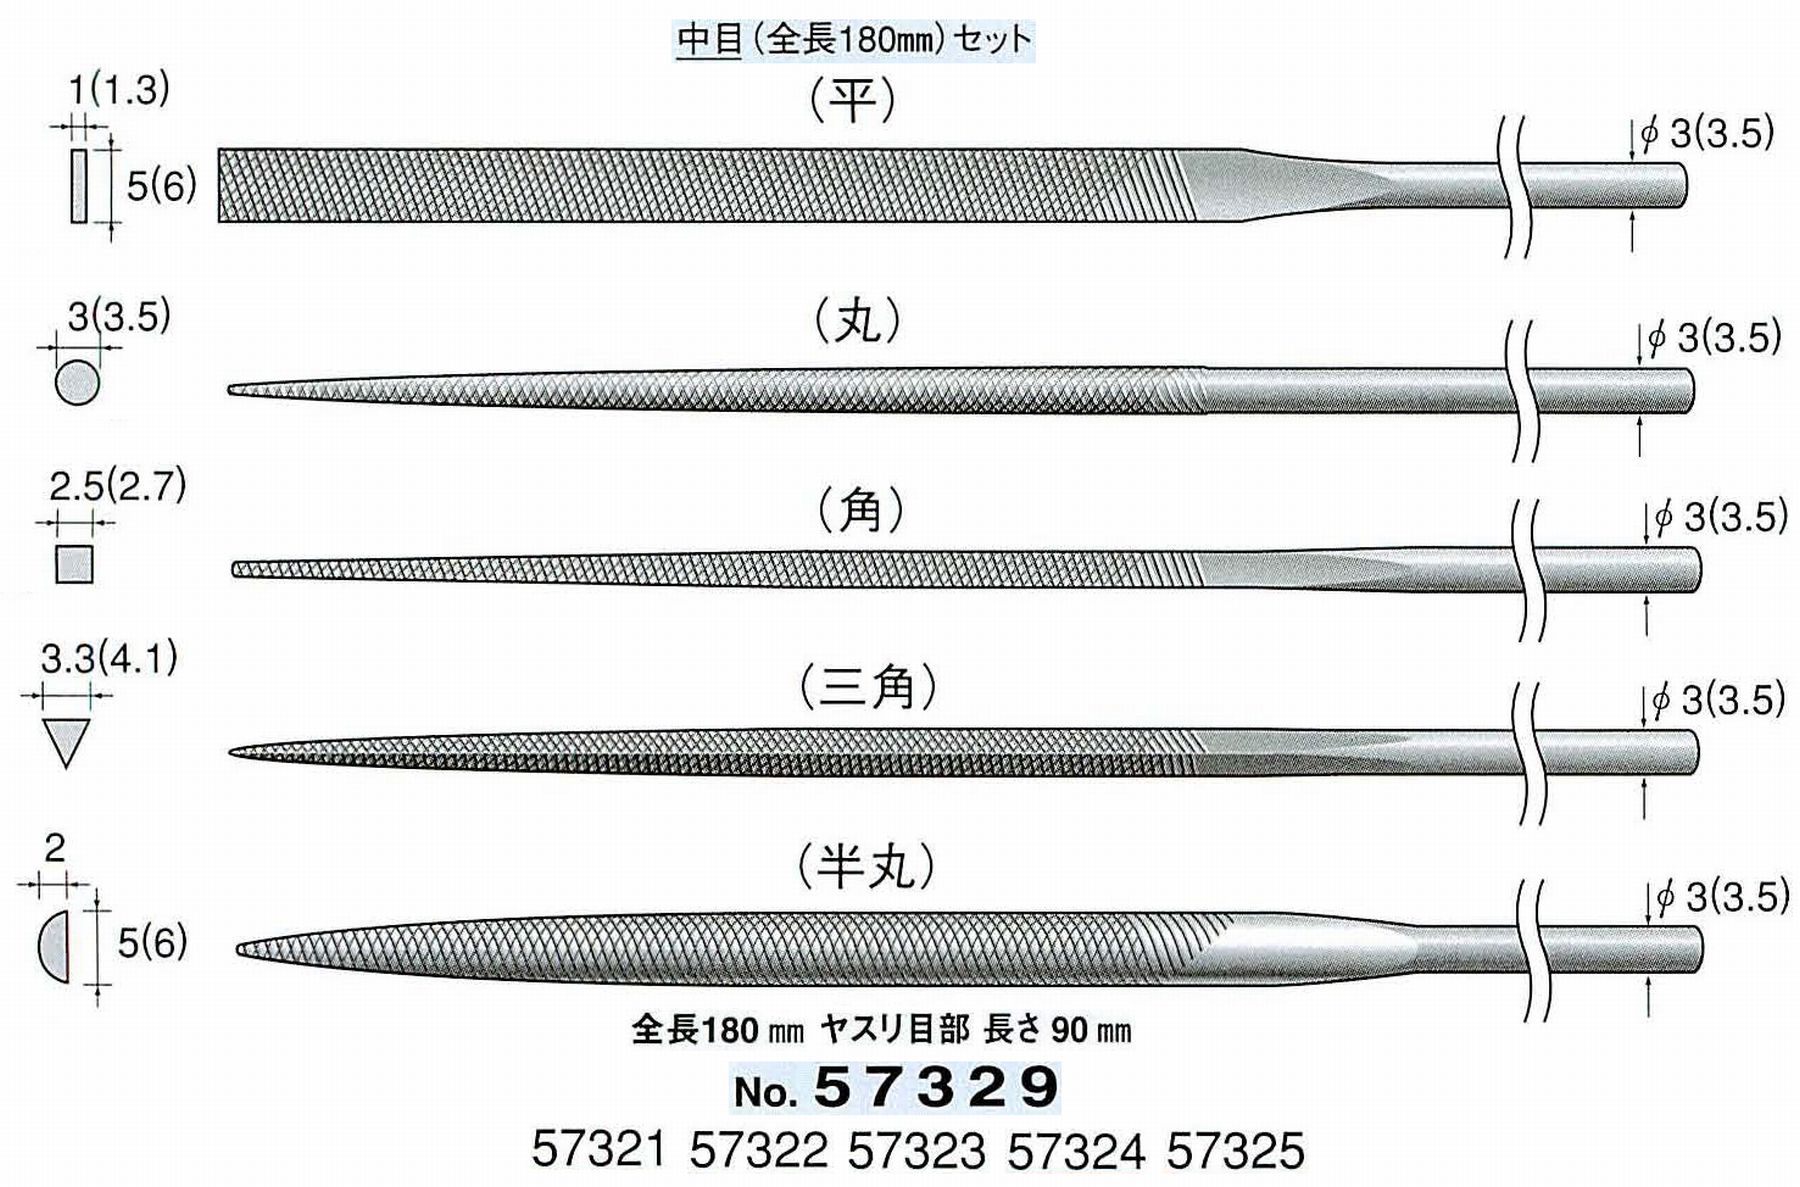 ナカニシ/NAKANISHI 精密仕上げヤスリ5本セット(全長180mm) 中目 軸径(シャンク)φ3.0mm(3.5) 57329